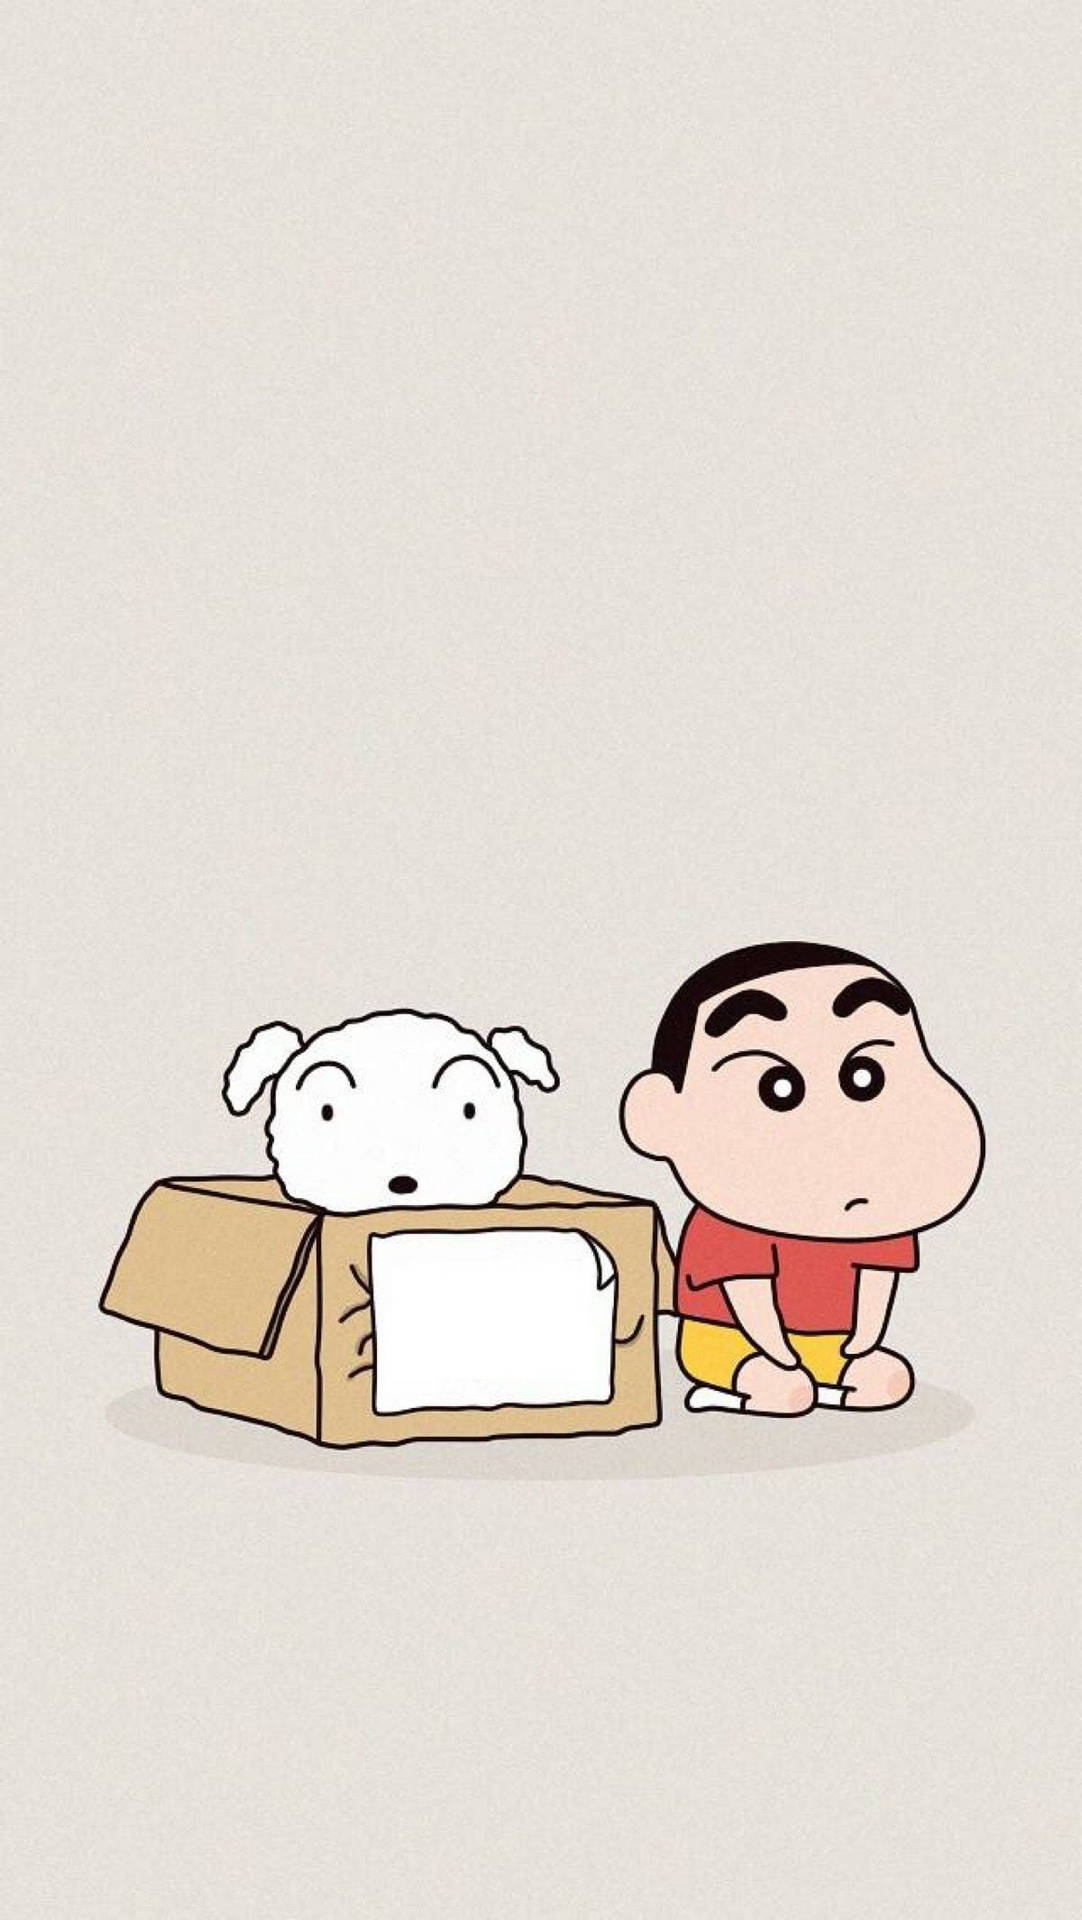 Shinchan Aesthetic With Shiro In A Box